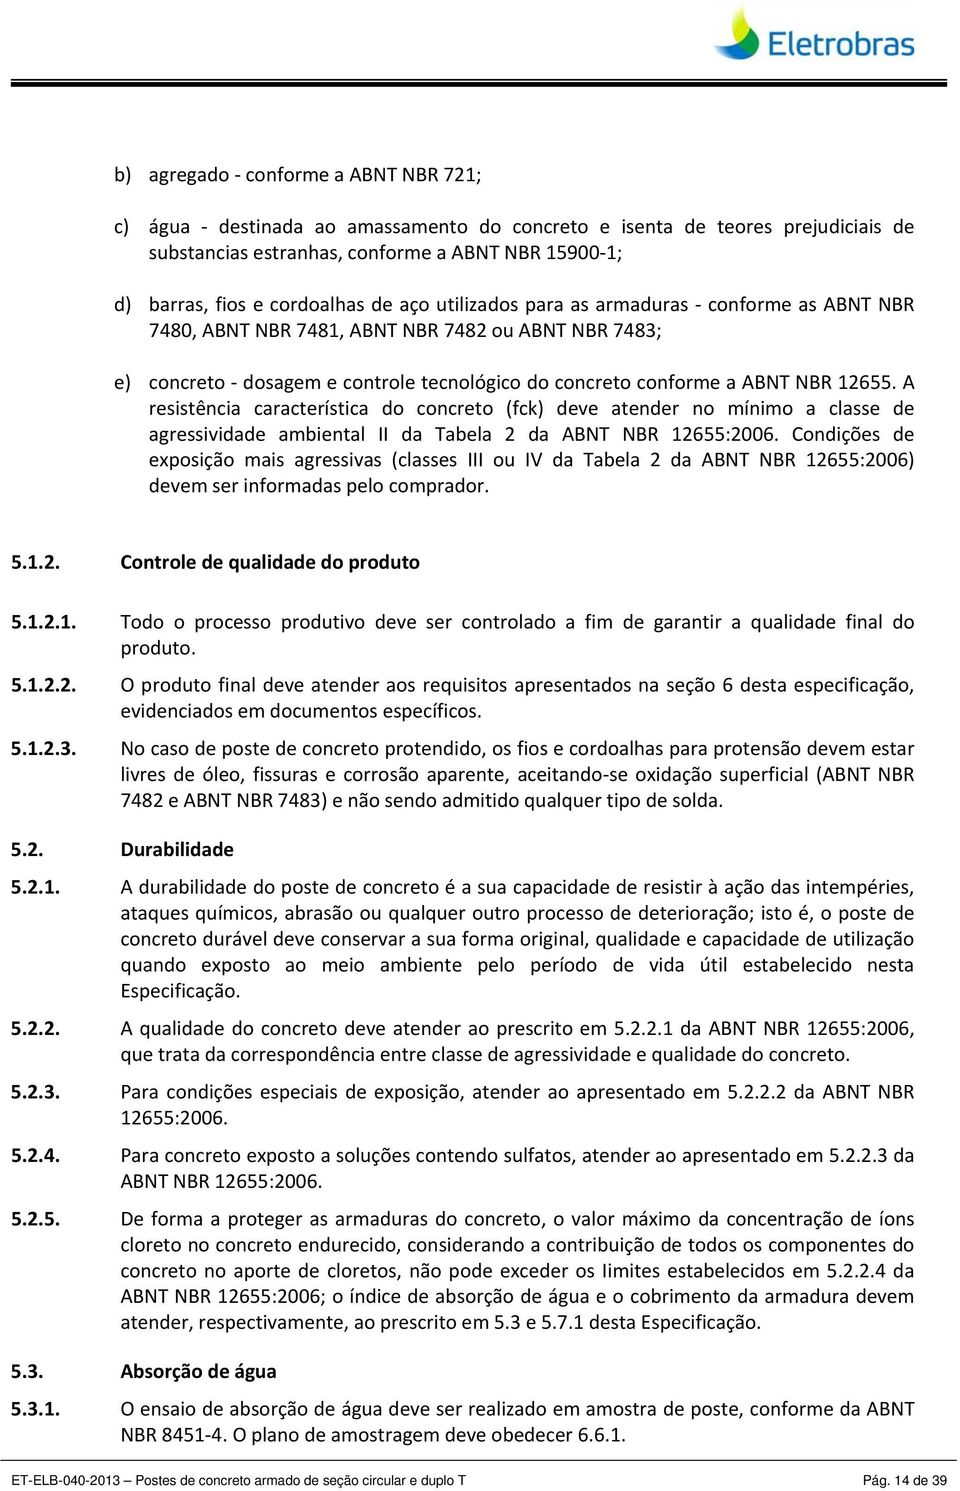 A resistência característica do concreto (fck) deve atender no mínimo a classe de agressividade ambiental II da Tabela 2 da ABNT NBR 12655:2006.